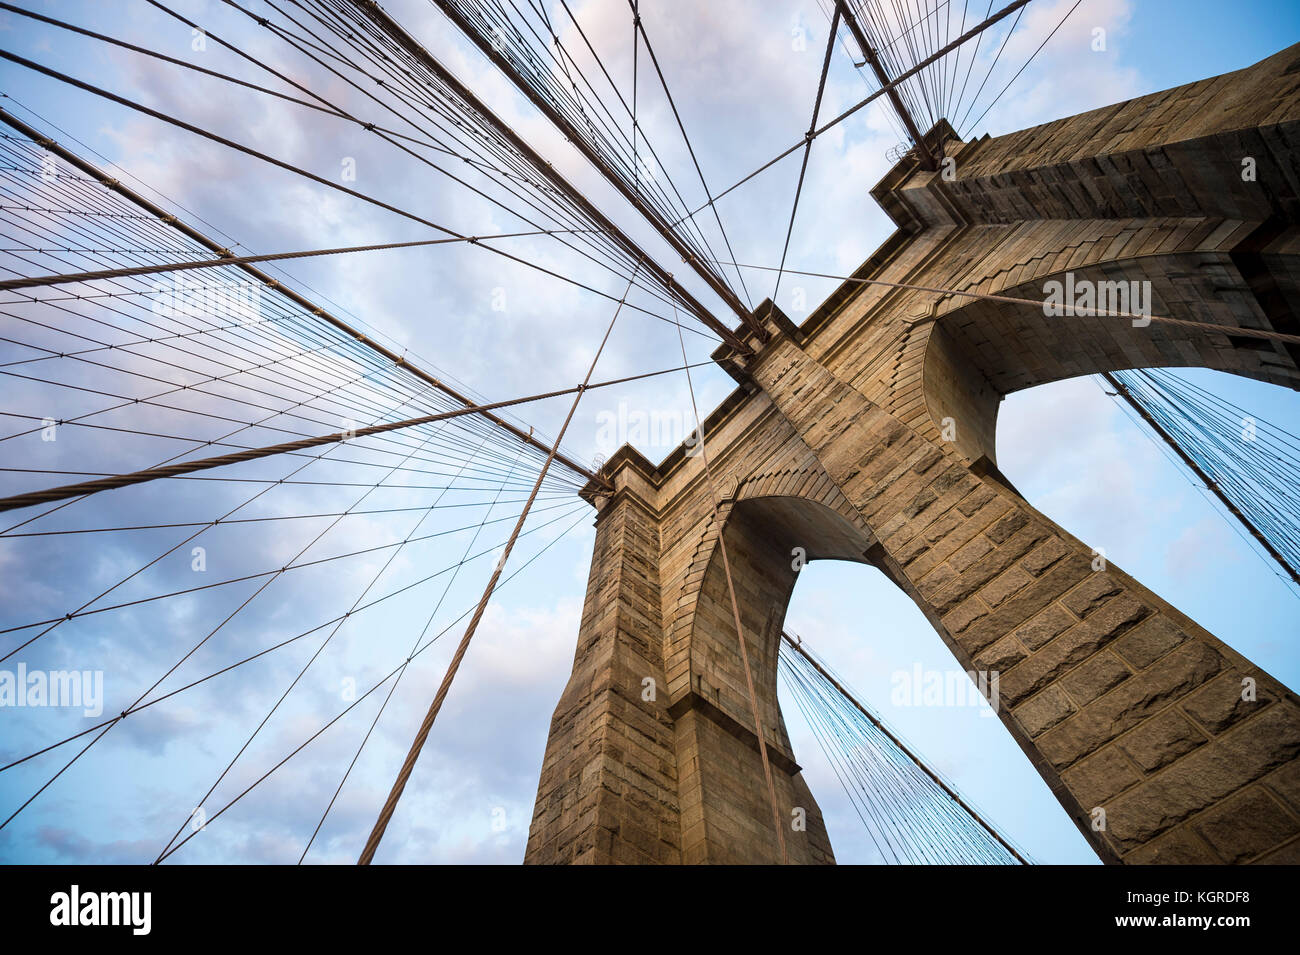 Architectural close-up i dettagli del punto di riferimento ponte di Brooklyn a New York City con i suoi leggendari cavi di acciaio rendendo criss-cross patterns al tramonto Foto Stock